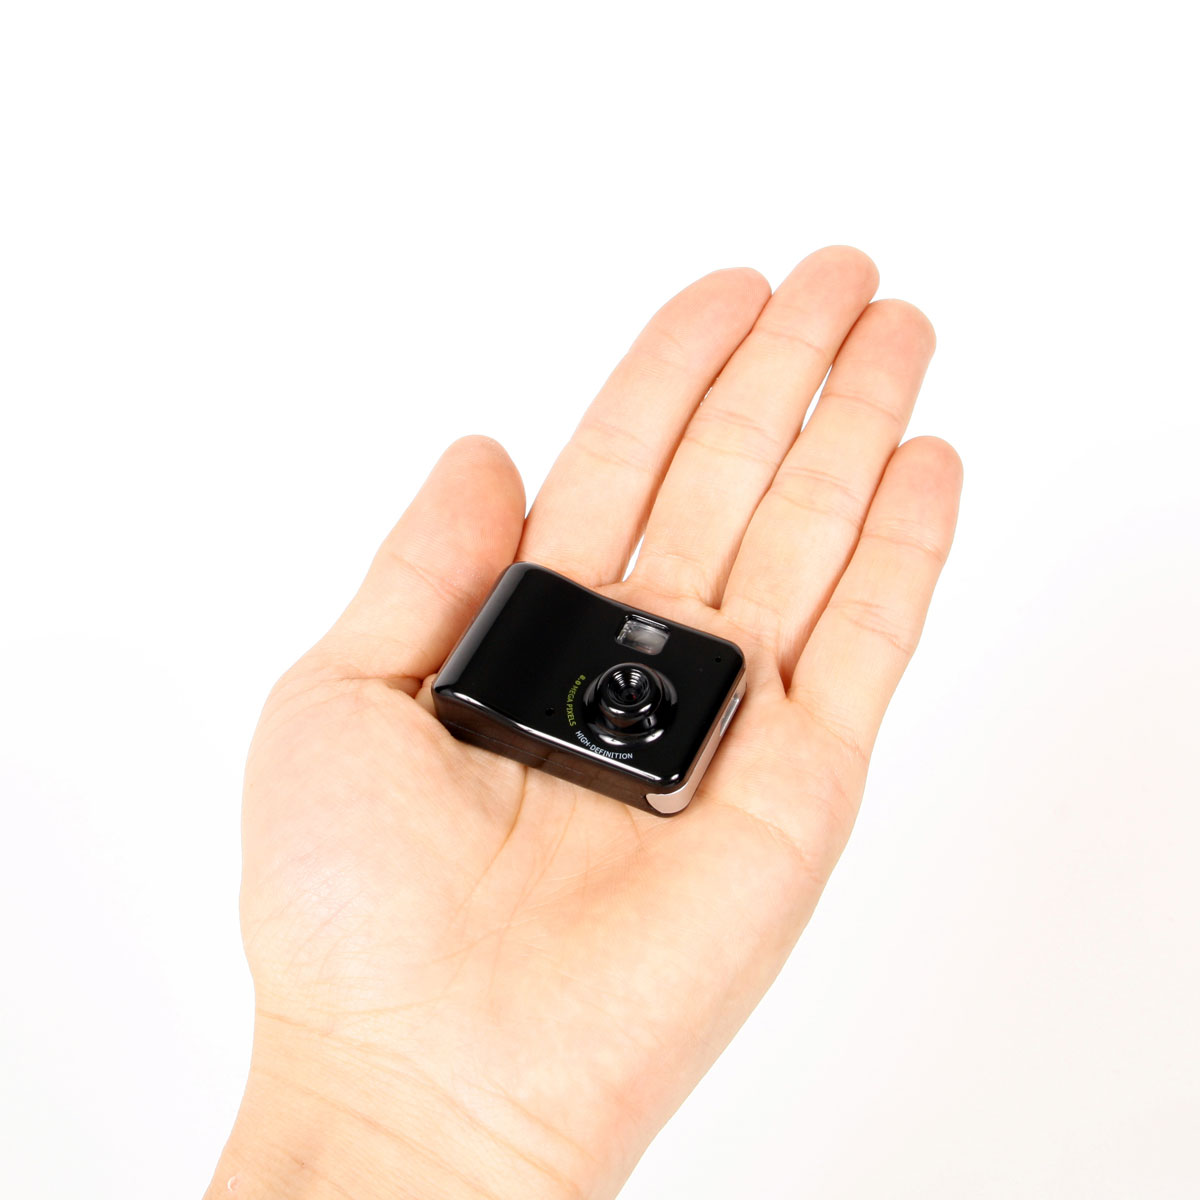 800万画素でHD動画も撮影できる手のひらサイズの超極小カメラ「小っせいなぁ～CAM DX」登場、重さはなんと14グラム - GIGAZINE